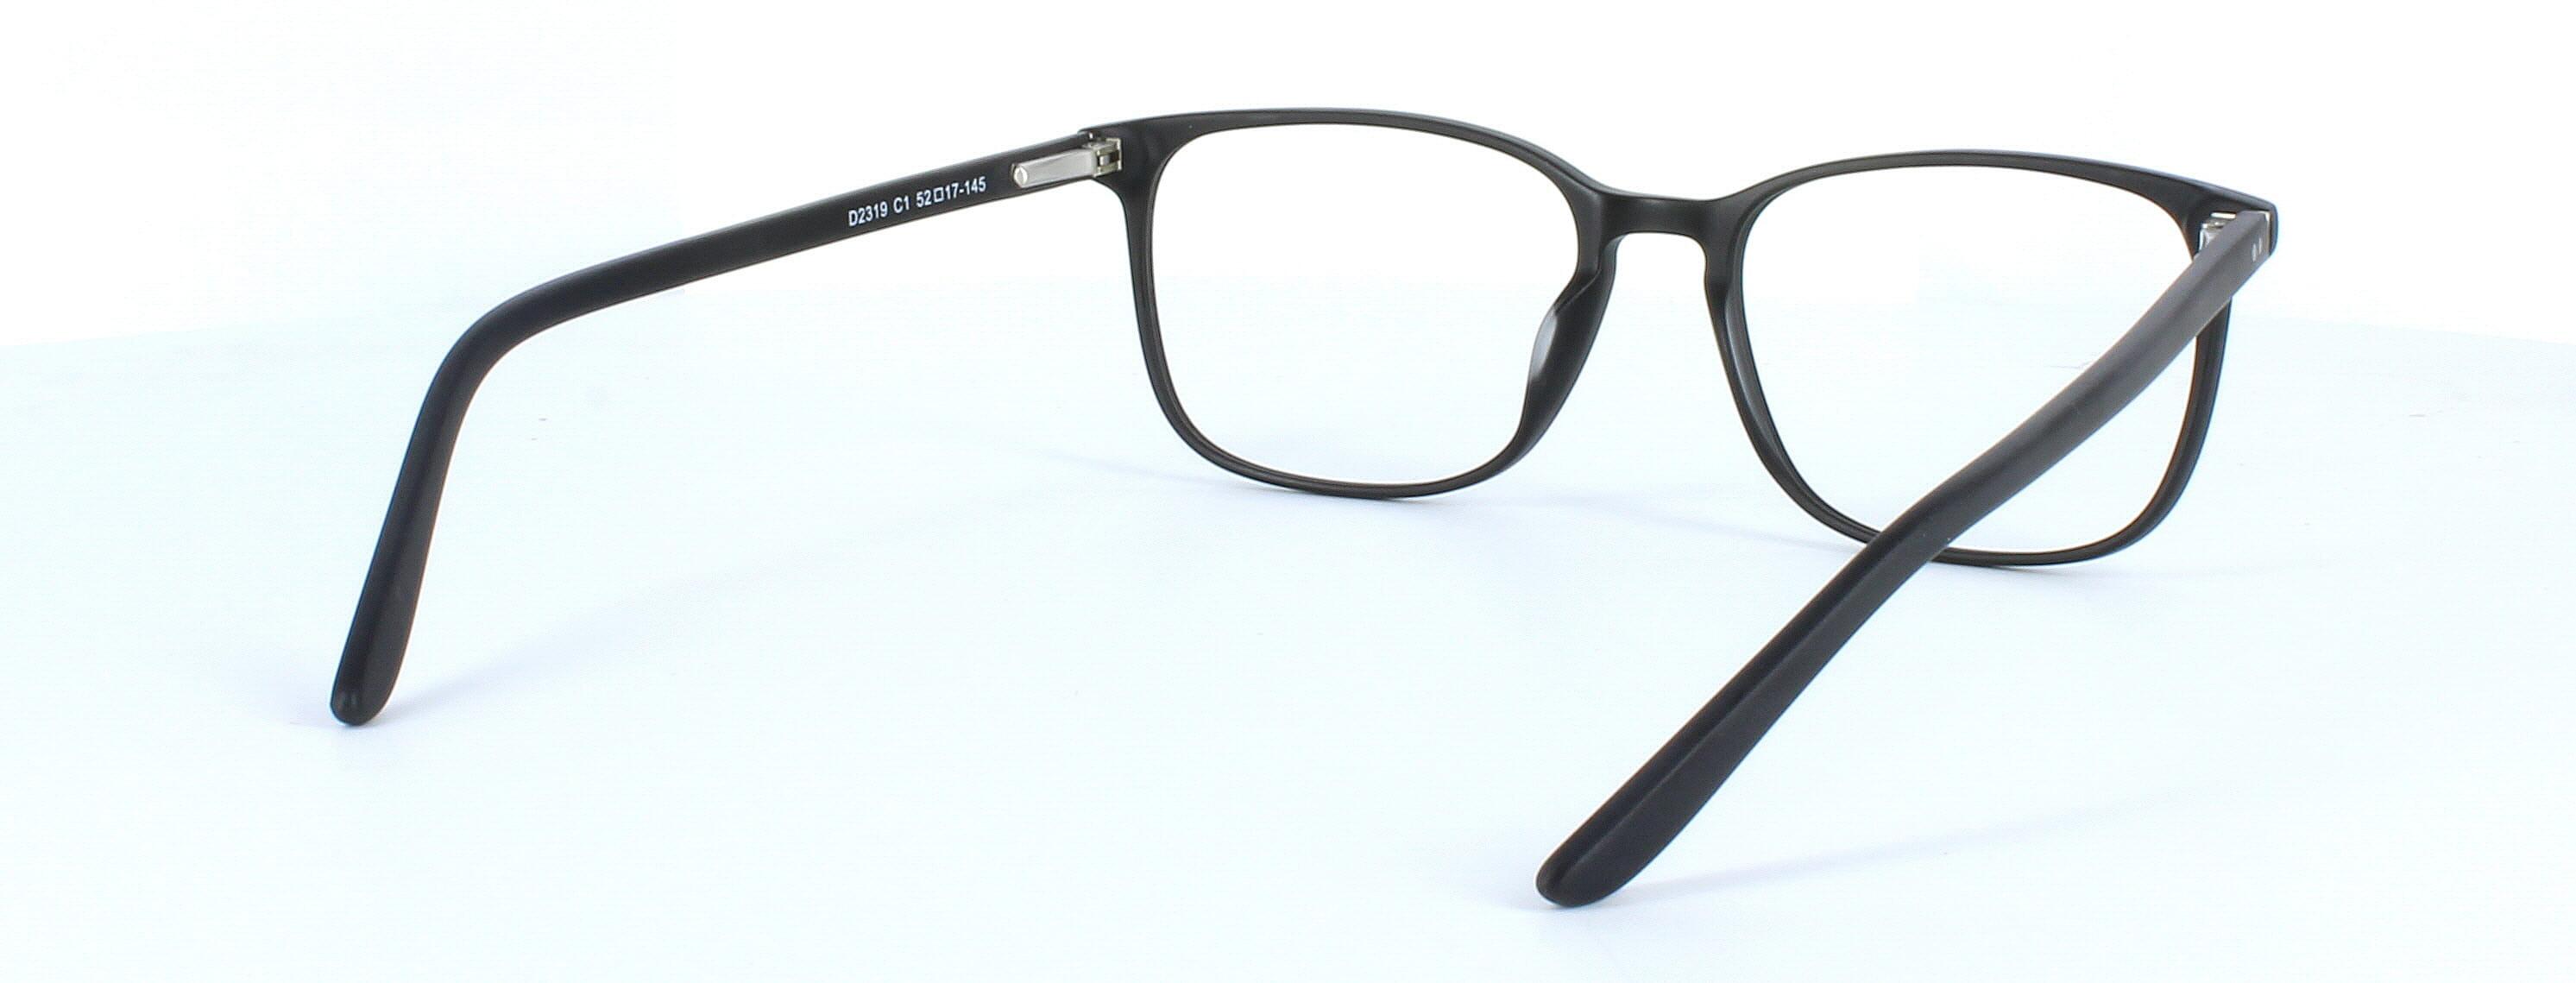 Farrington - unisex plastic glasses frame in matt black with rectangular lens shape and sprung hinge temple - image 4